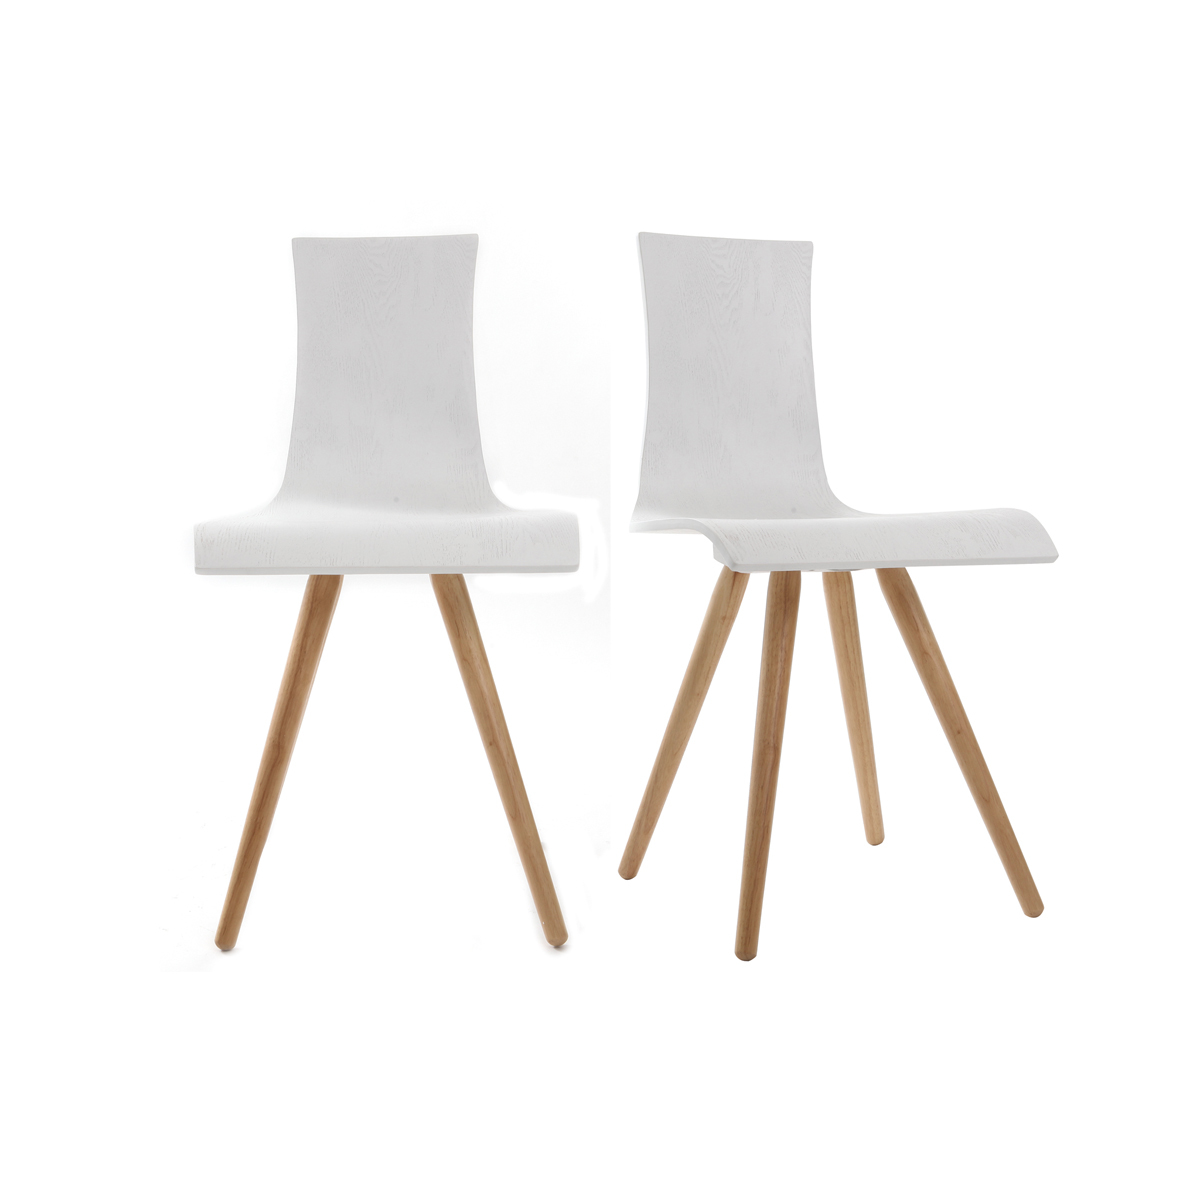 Chaises design bois et blanc (lot de 2) BALTIK vue1